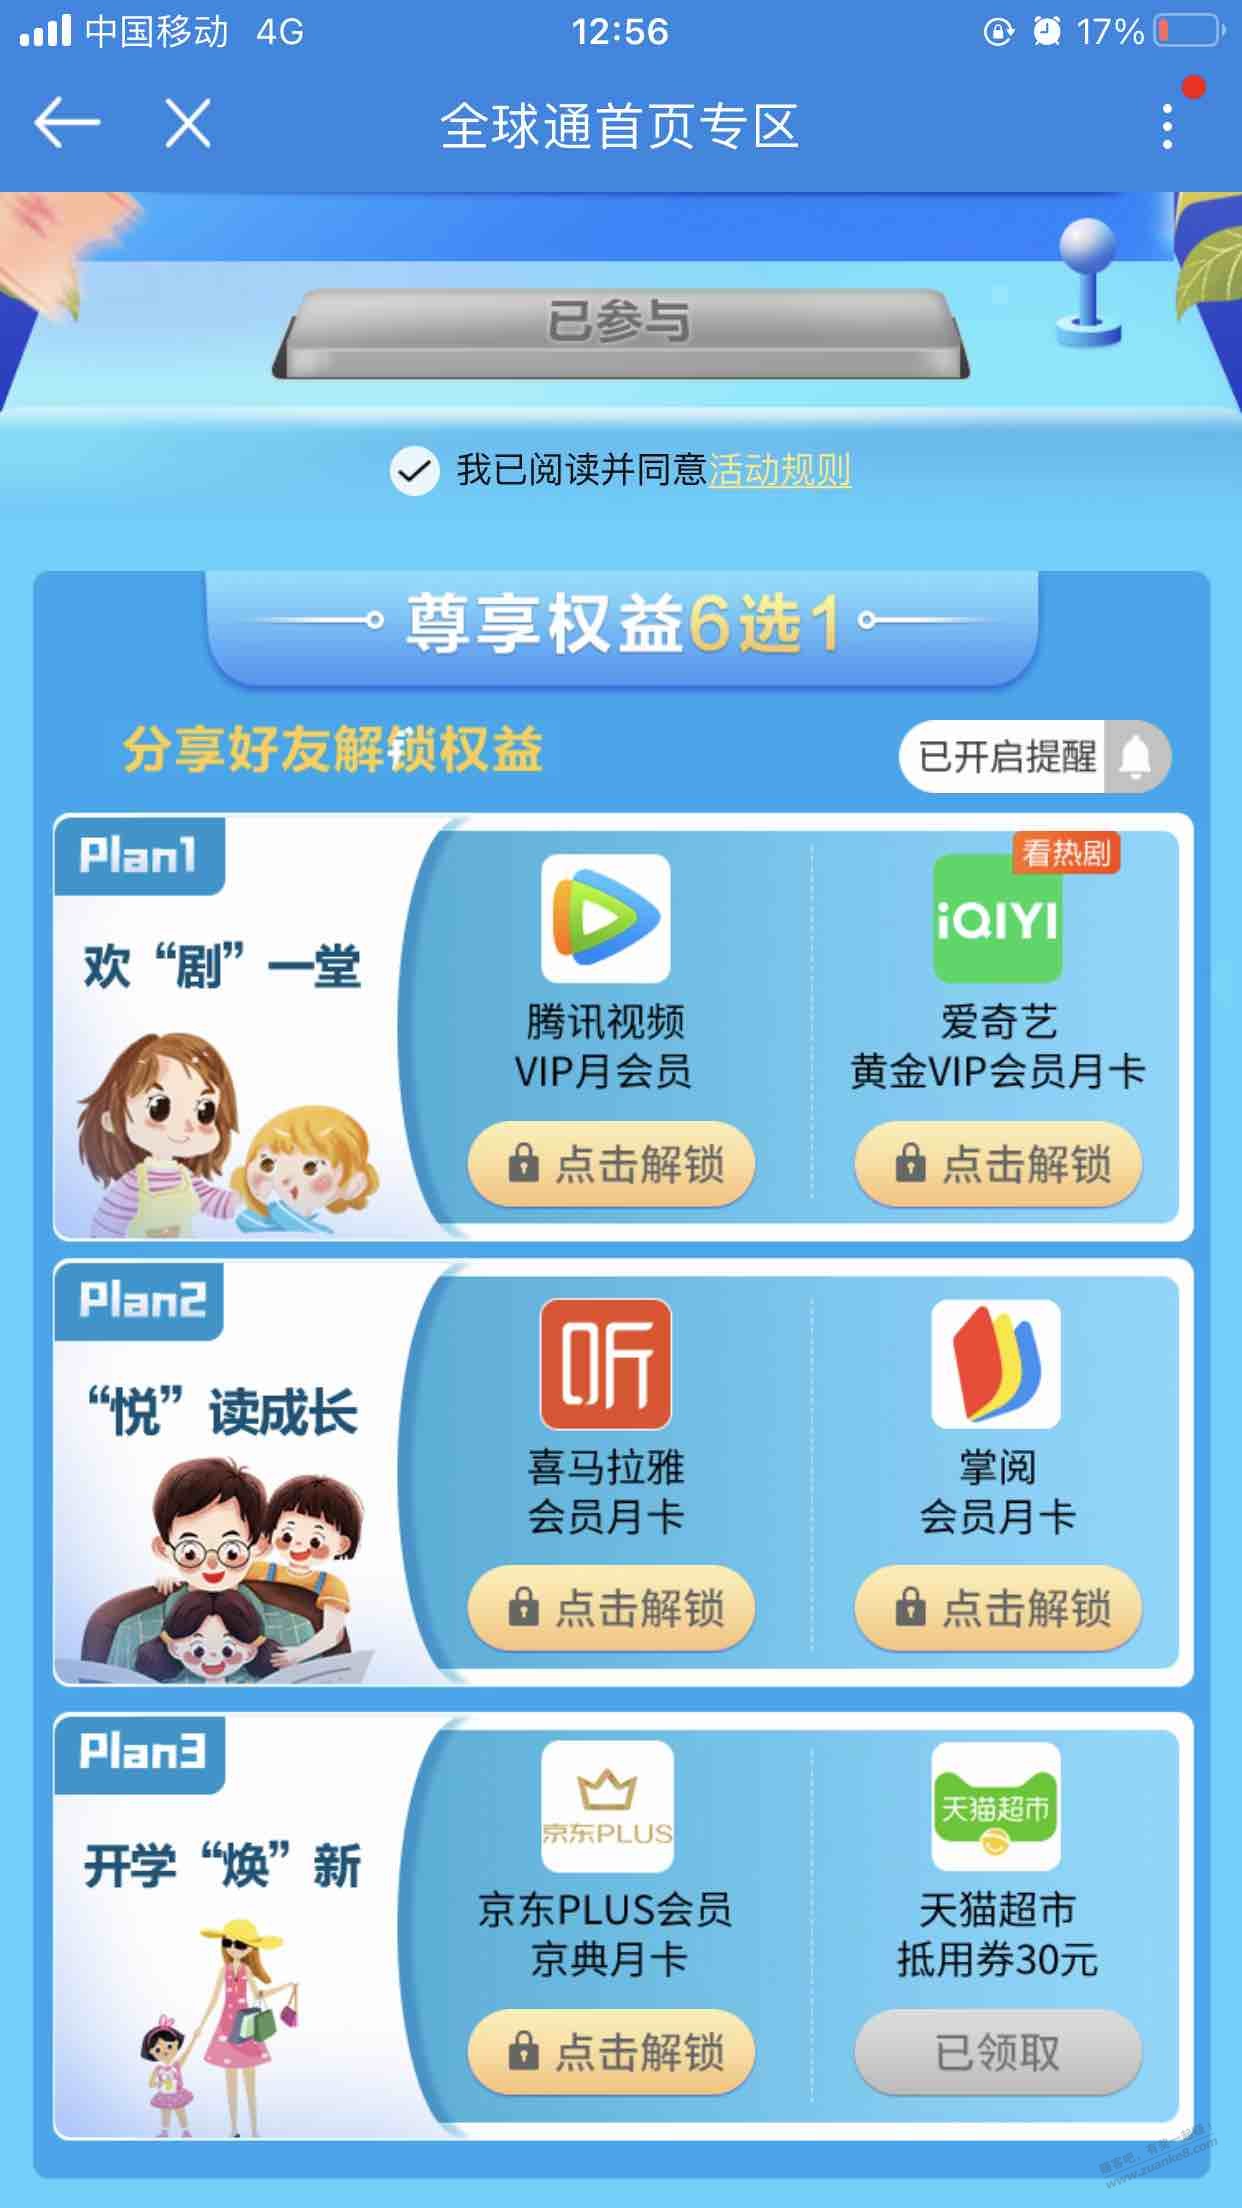 广东移动app-全球通-星钻日-冲-冲-30毛